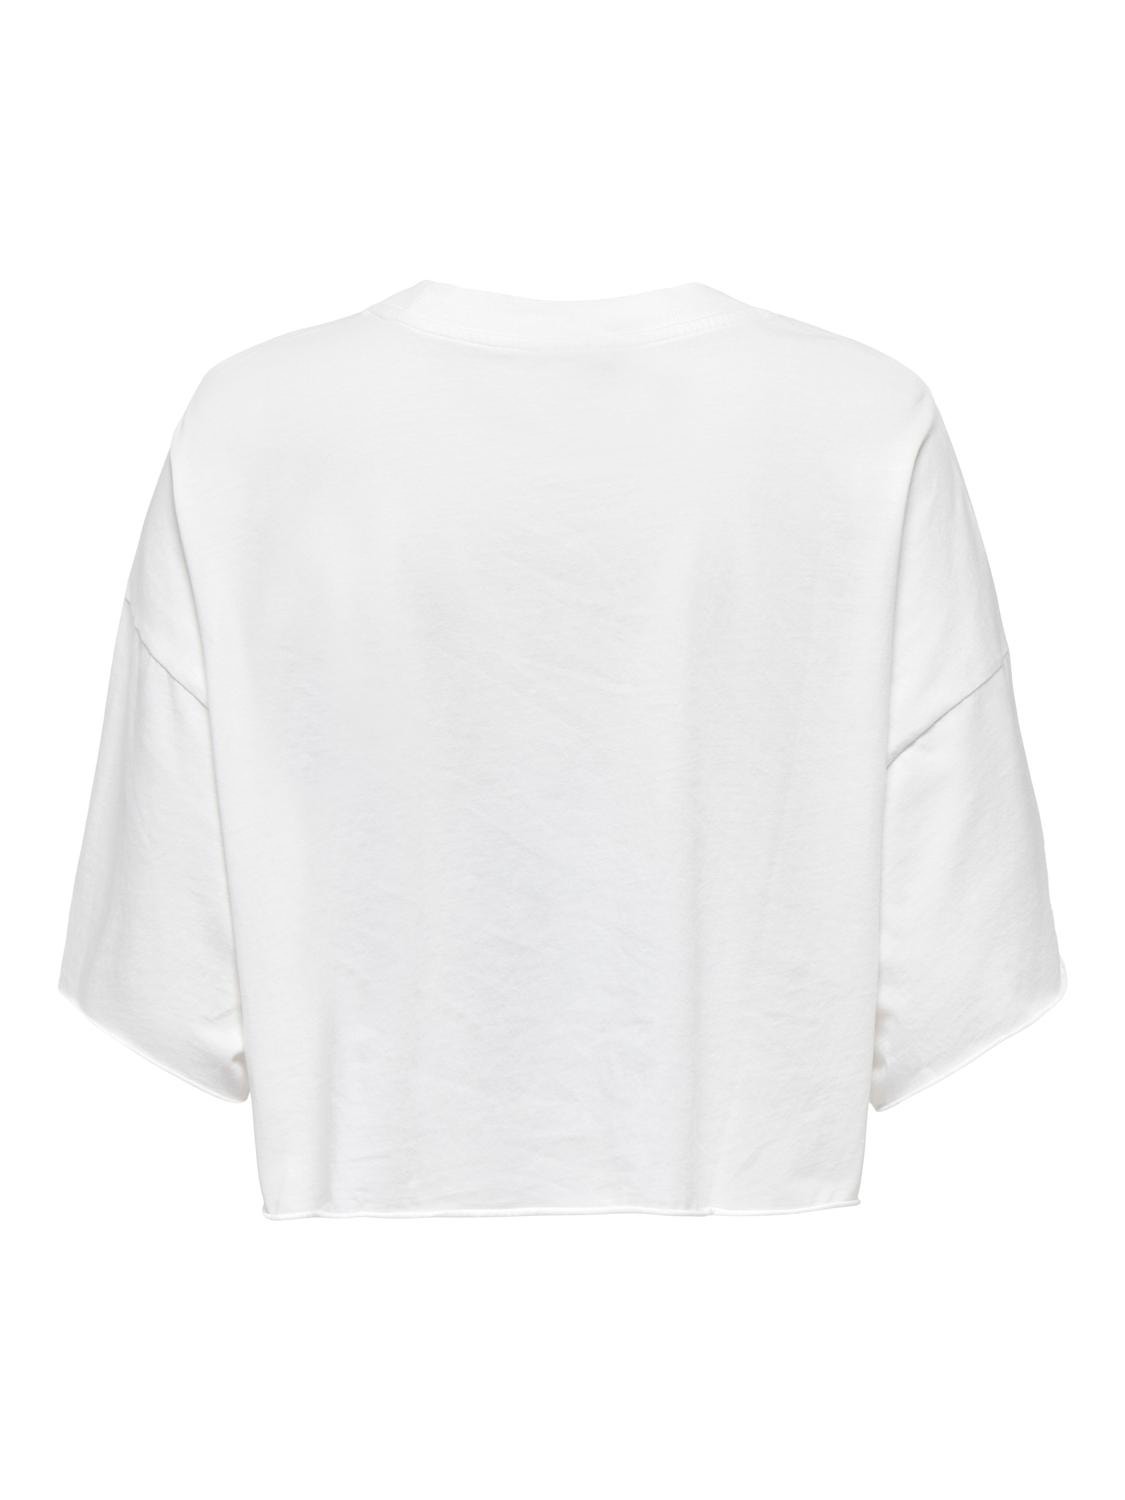 ONLY Cropped Fit O-hals T-skjorte -Cloud Dancer - 15290548